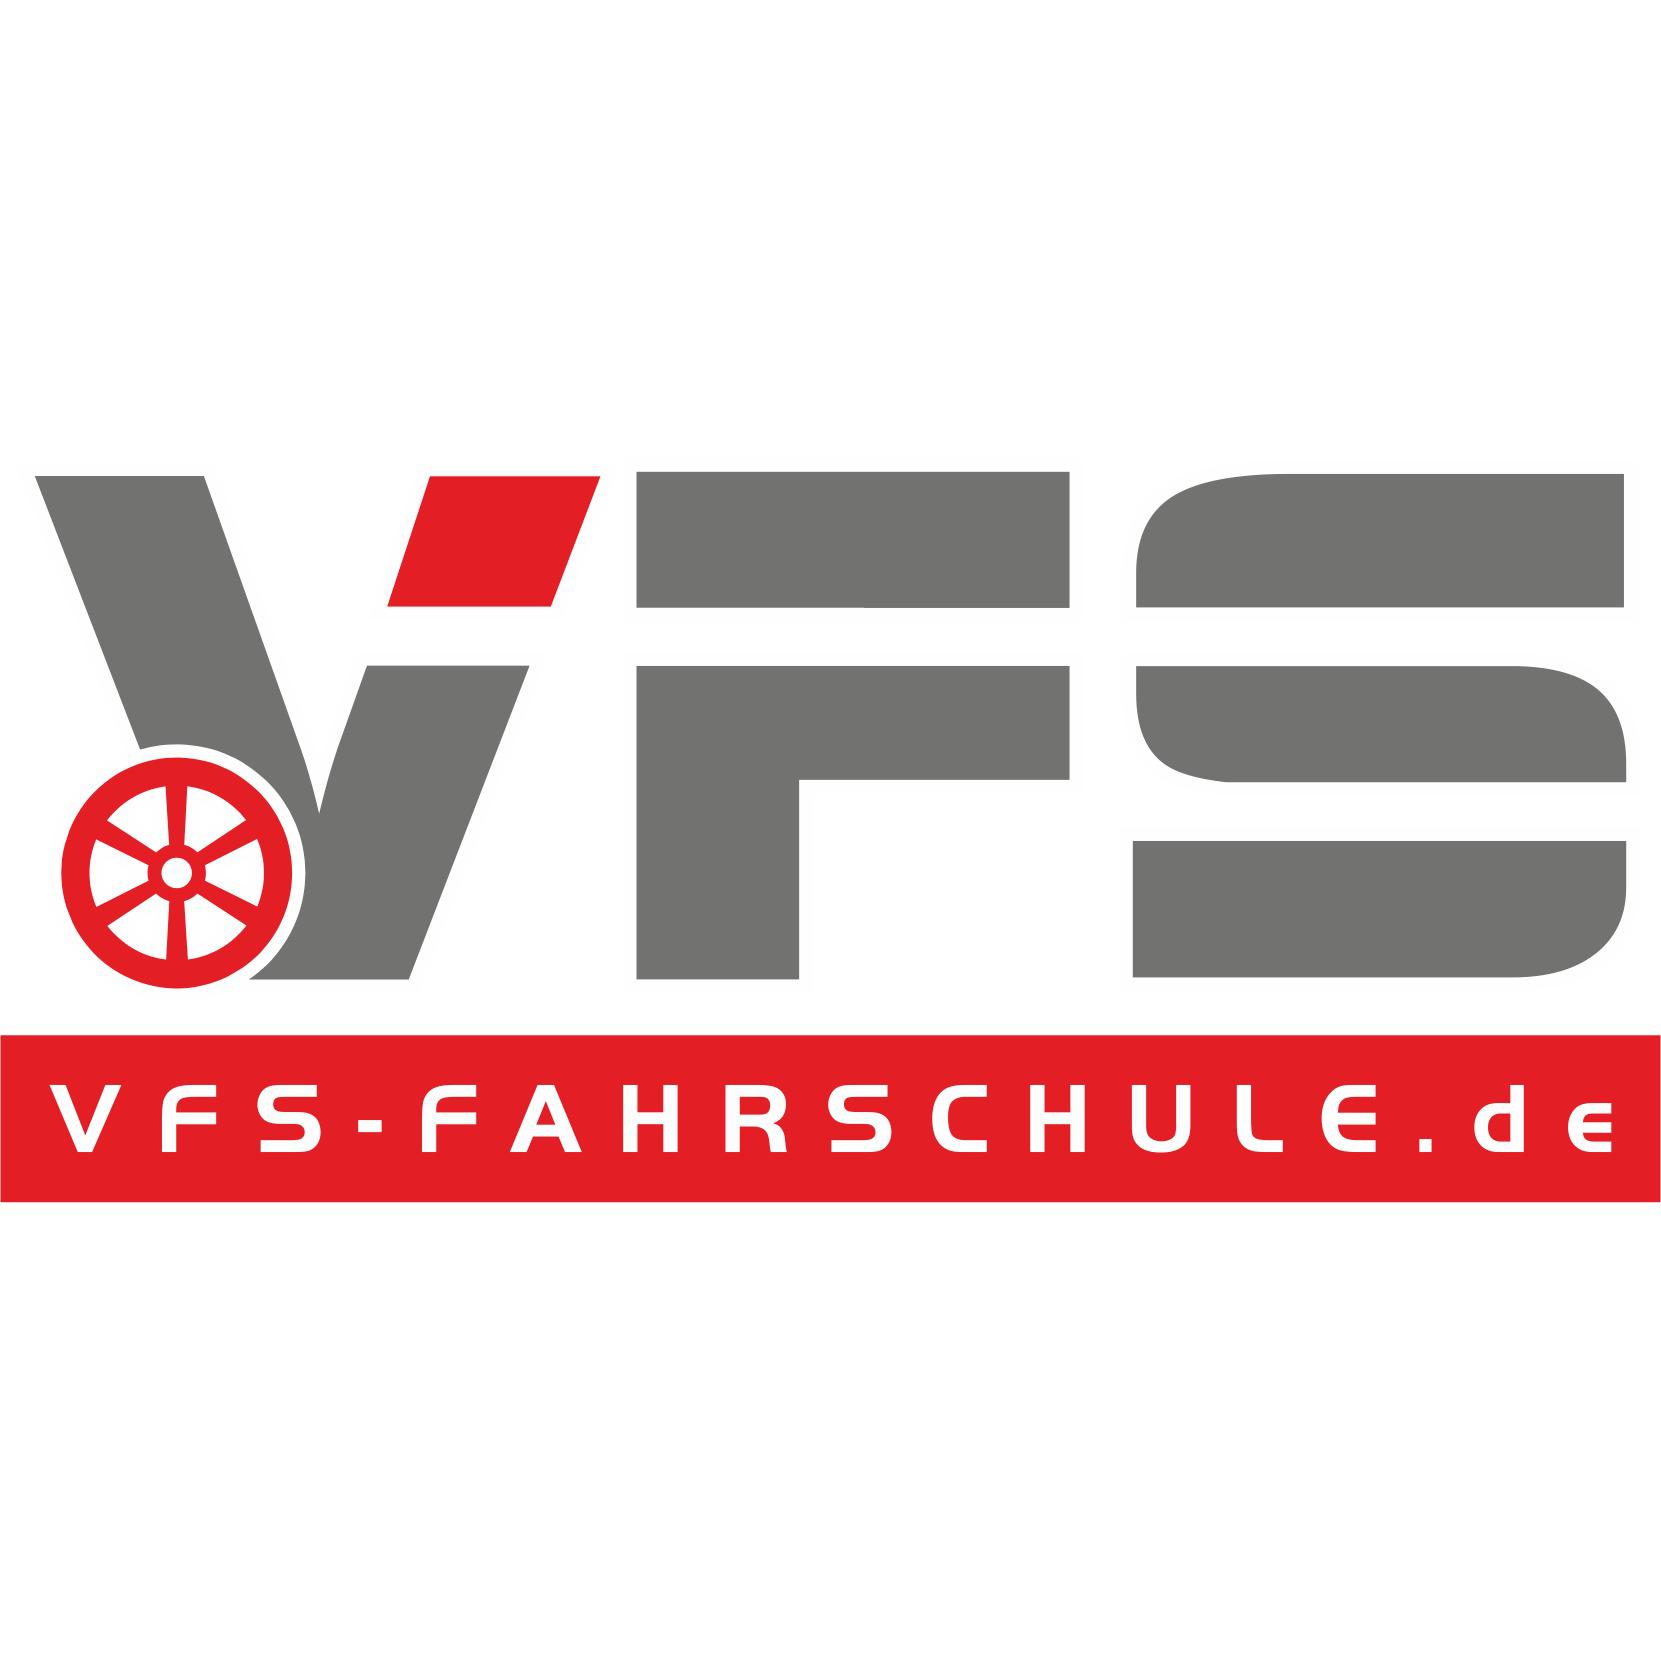 VFS Fahrschule Osnabrück in Wallenhorst - Logo